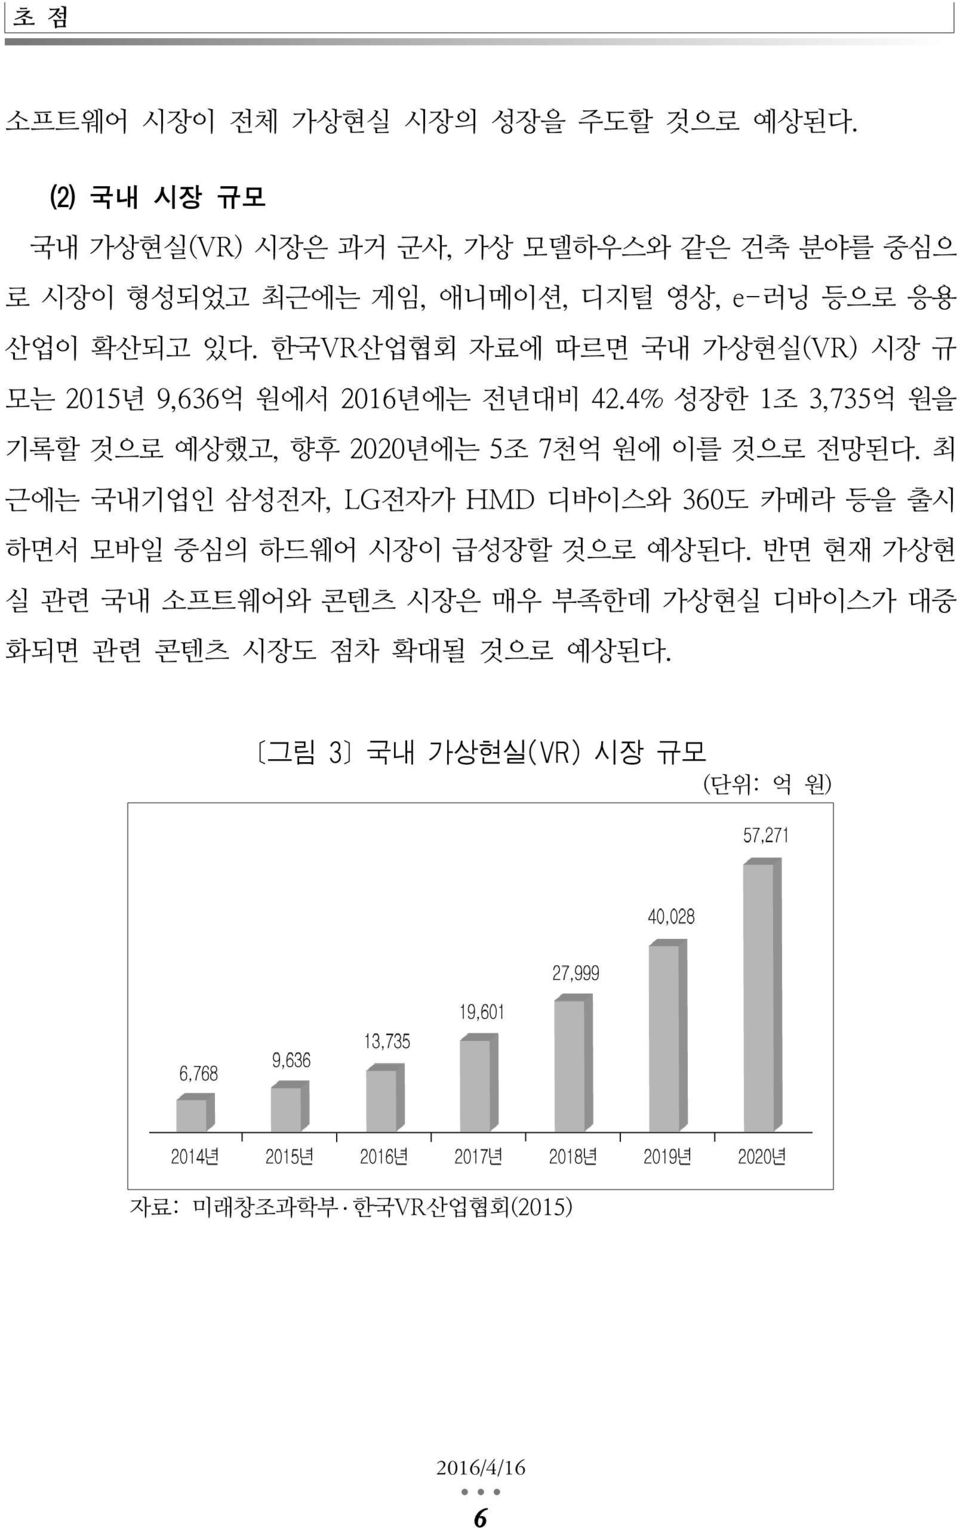 한국VR산업협회 자료에 따르면 국내 가상현실(VR) 시장 규 모는 2015년 9,636억 원에서 2016년에는 전년대비 42.